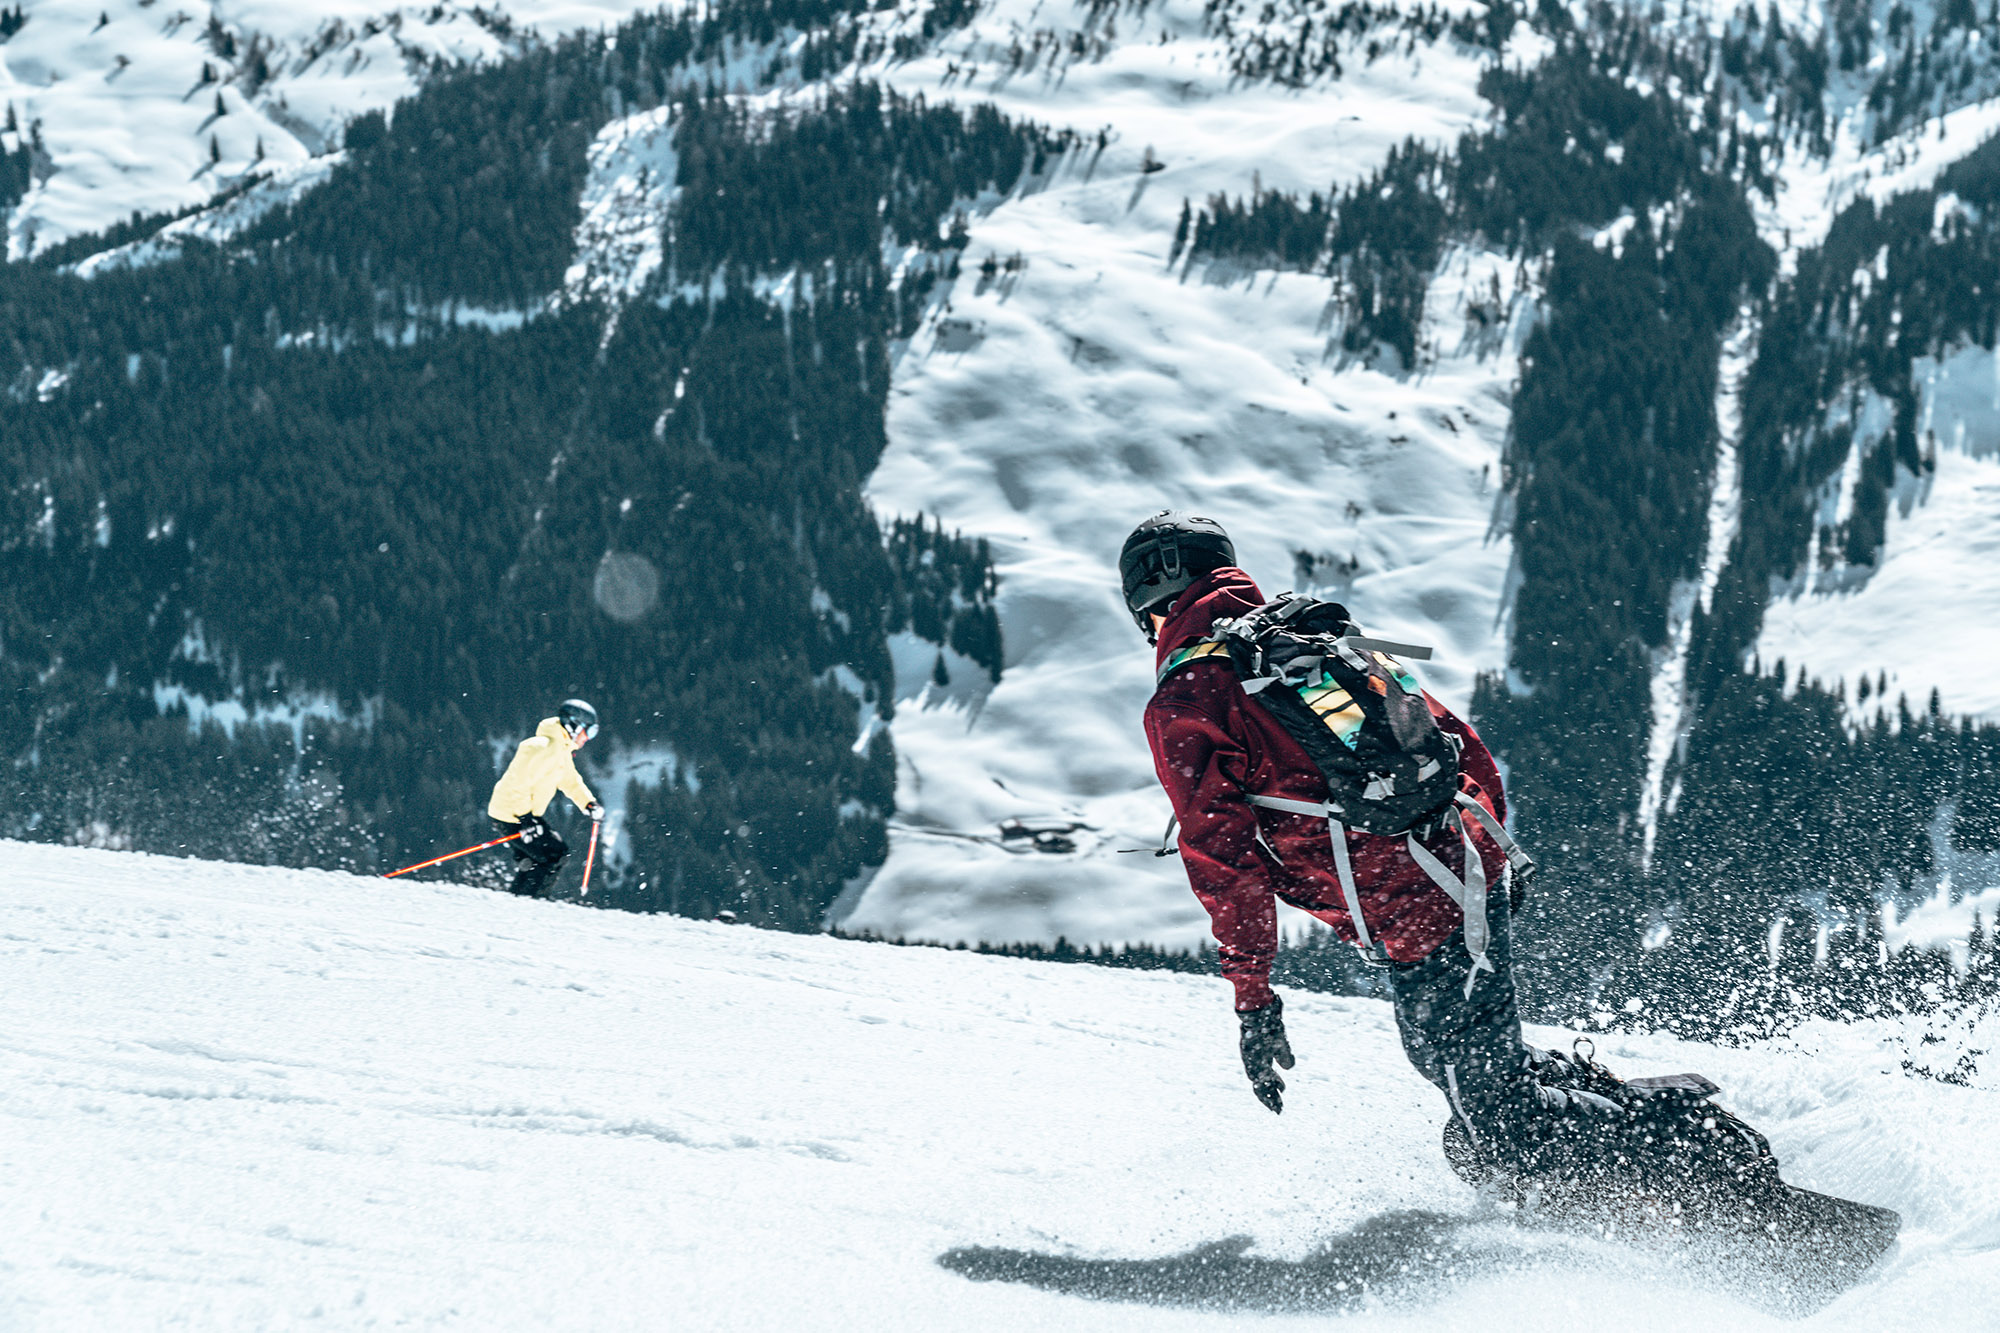 Hospitalidad Complejo Despertar Tres horas de esquí sin descanso duplica el riesgo de lesión